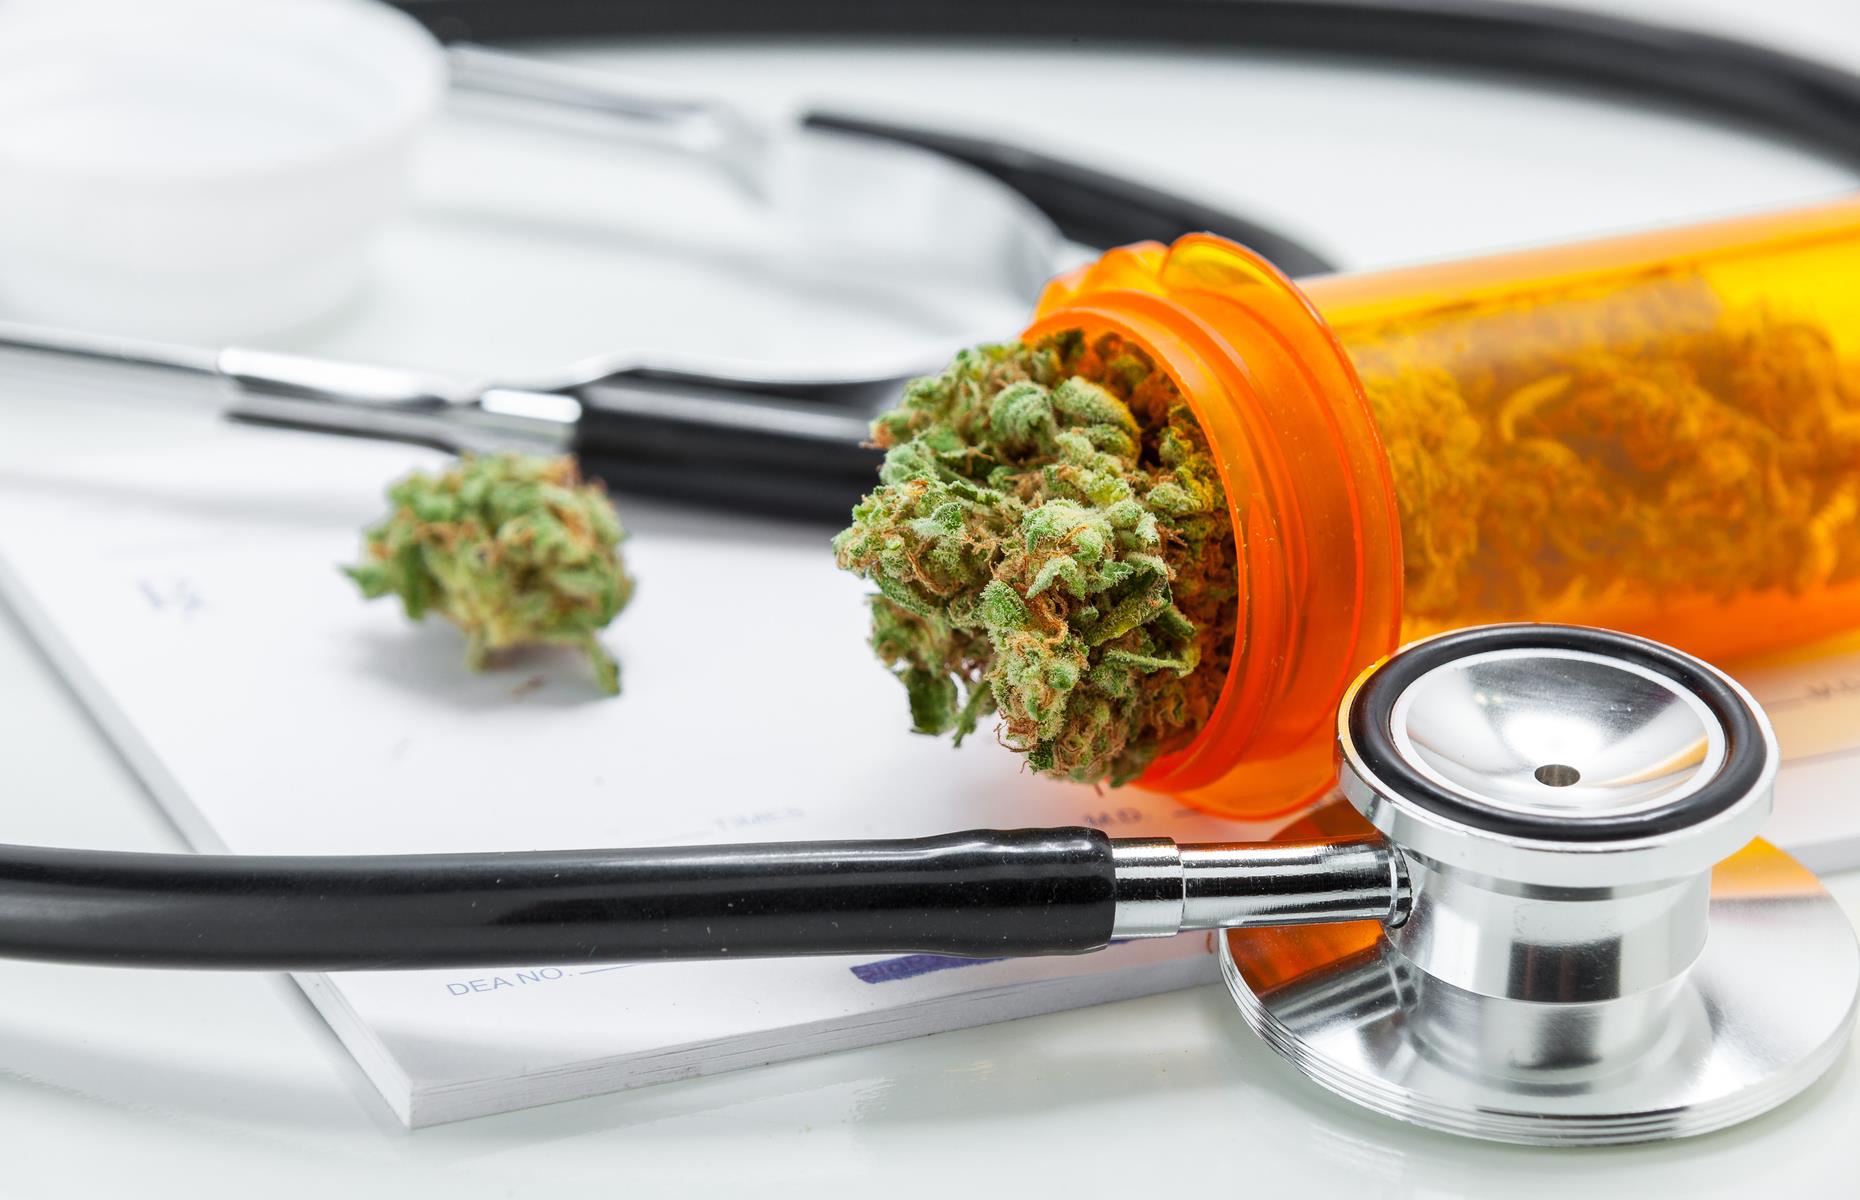 Montana: Medical Marijuana